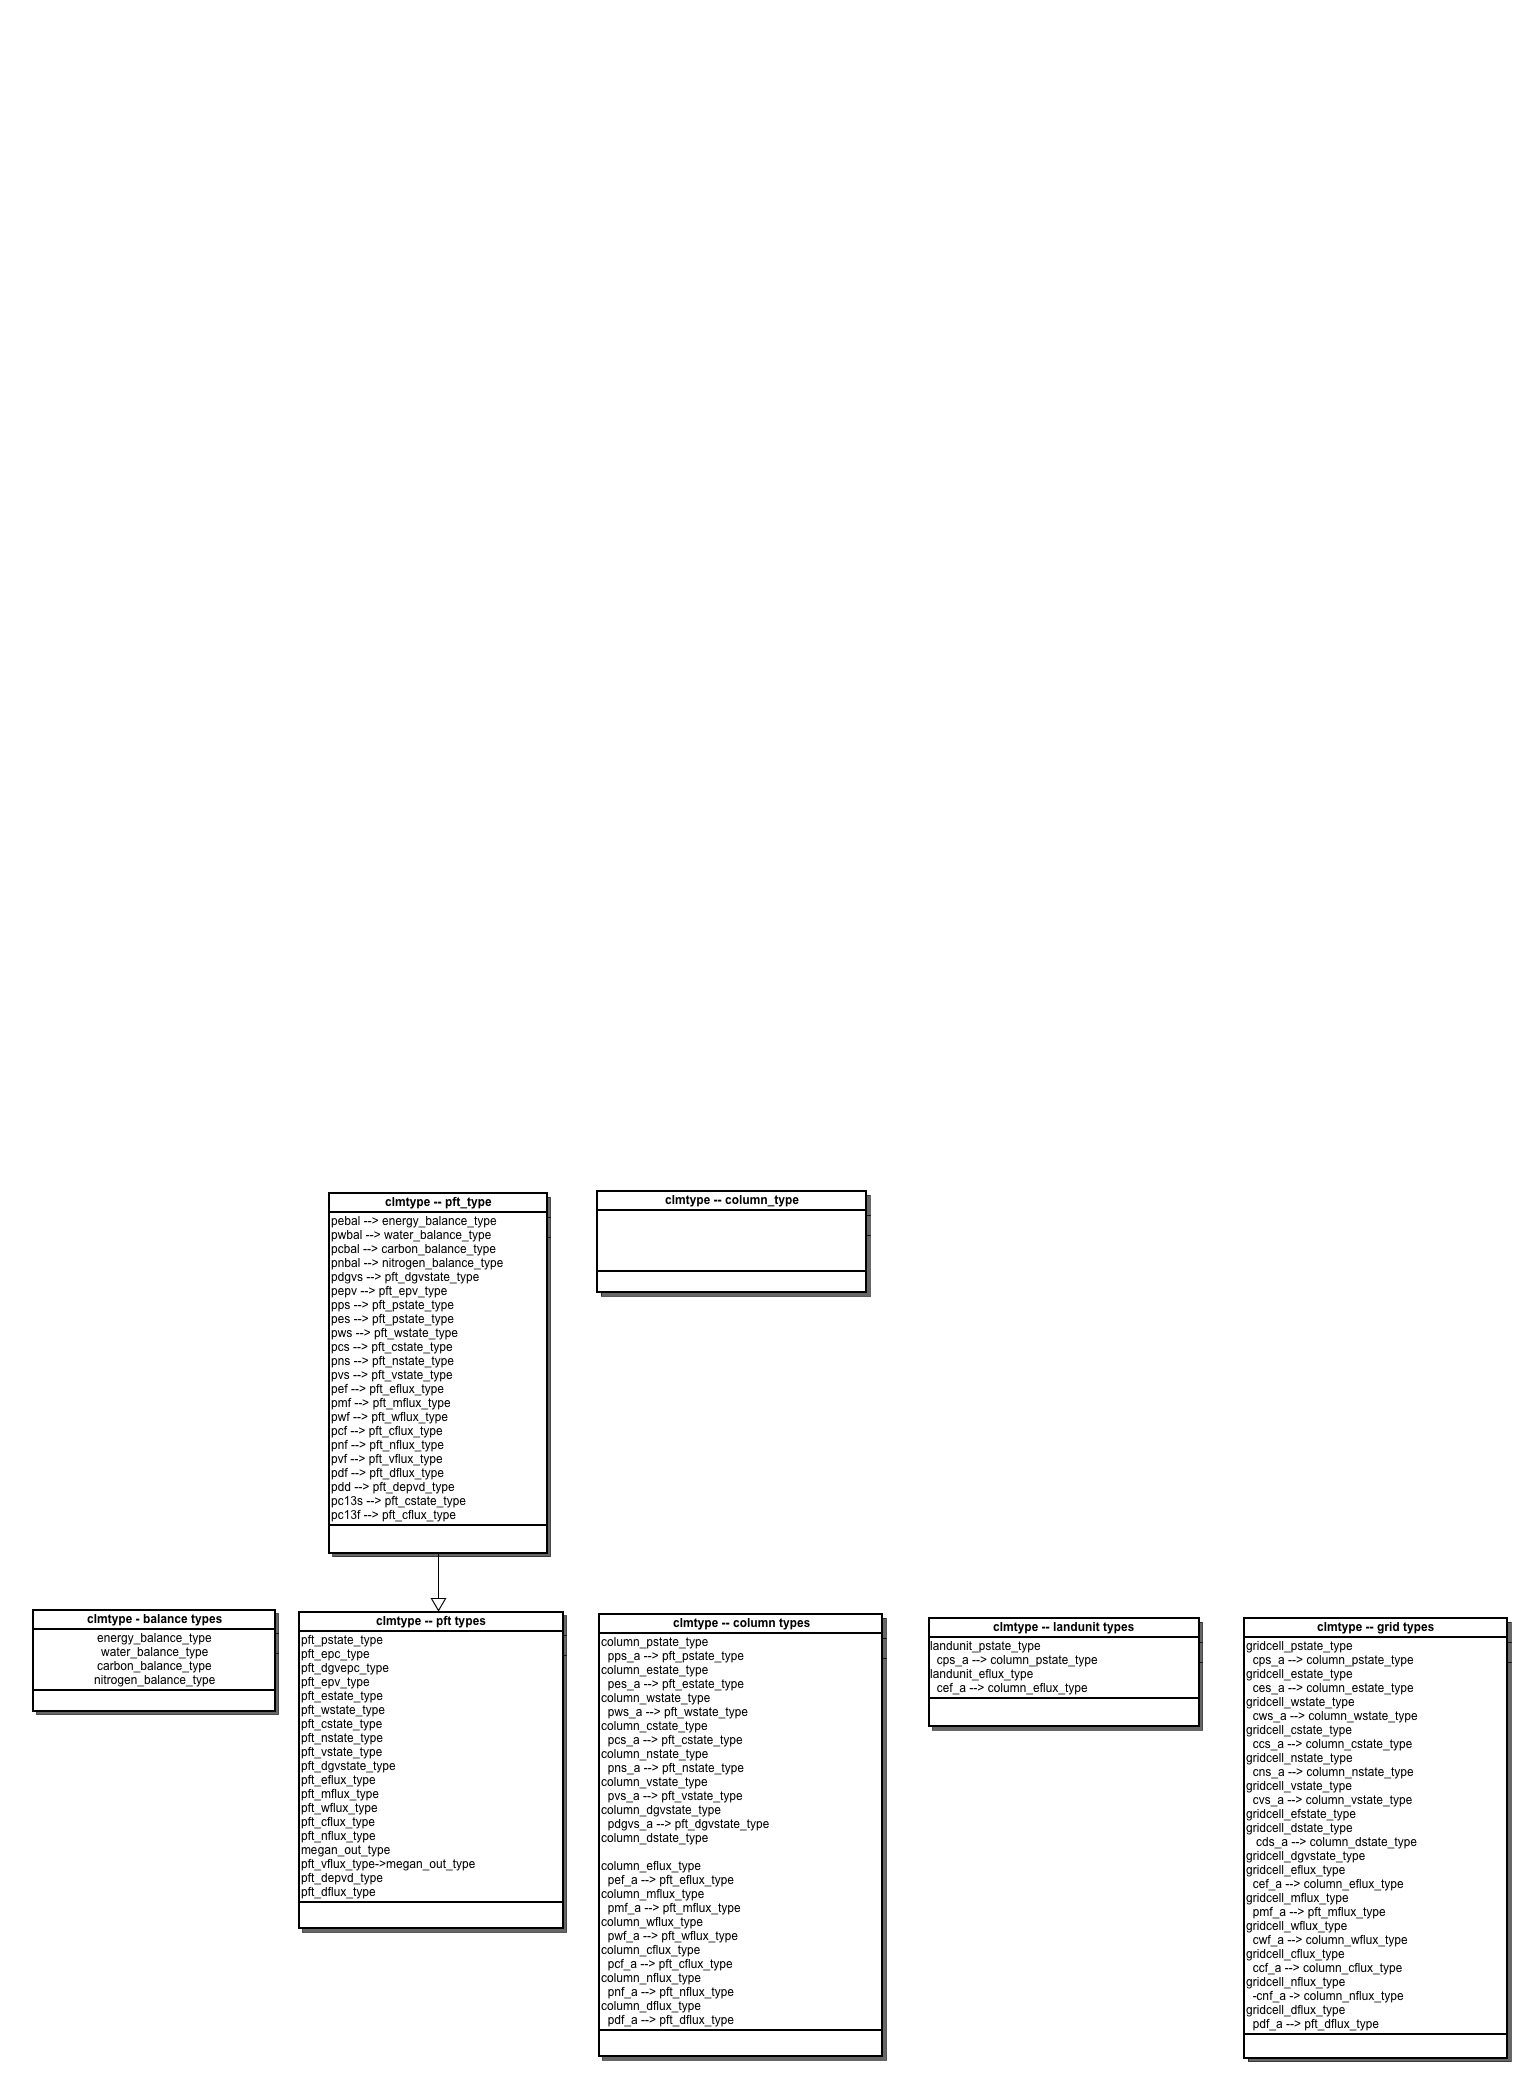 CLM UML Diagrams